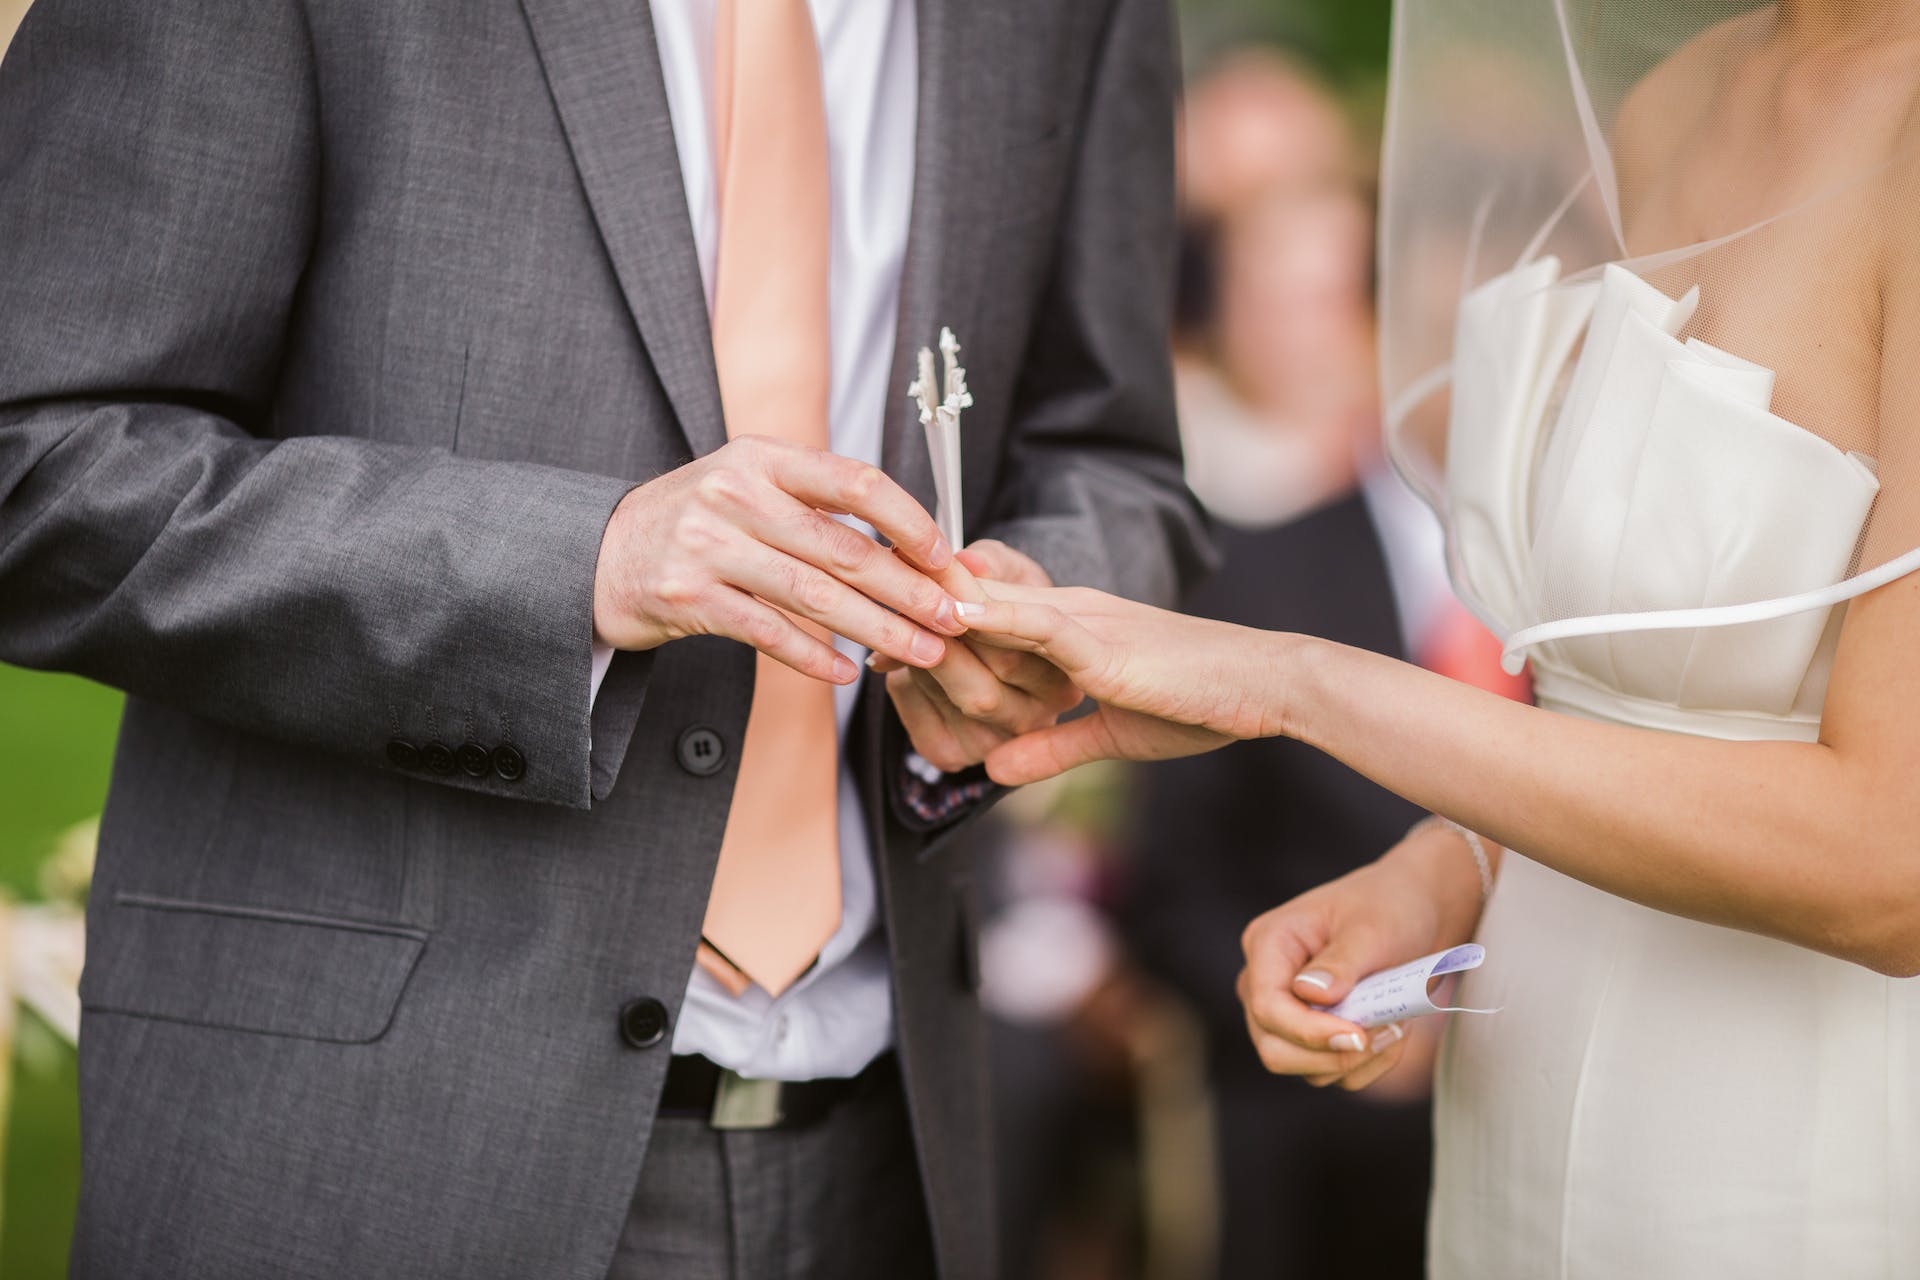 Groom putting wedding ring on his bride | Source: Pexels